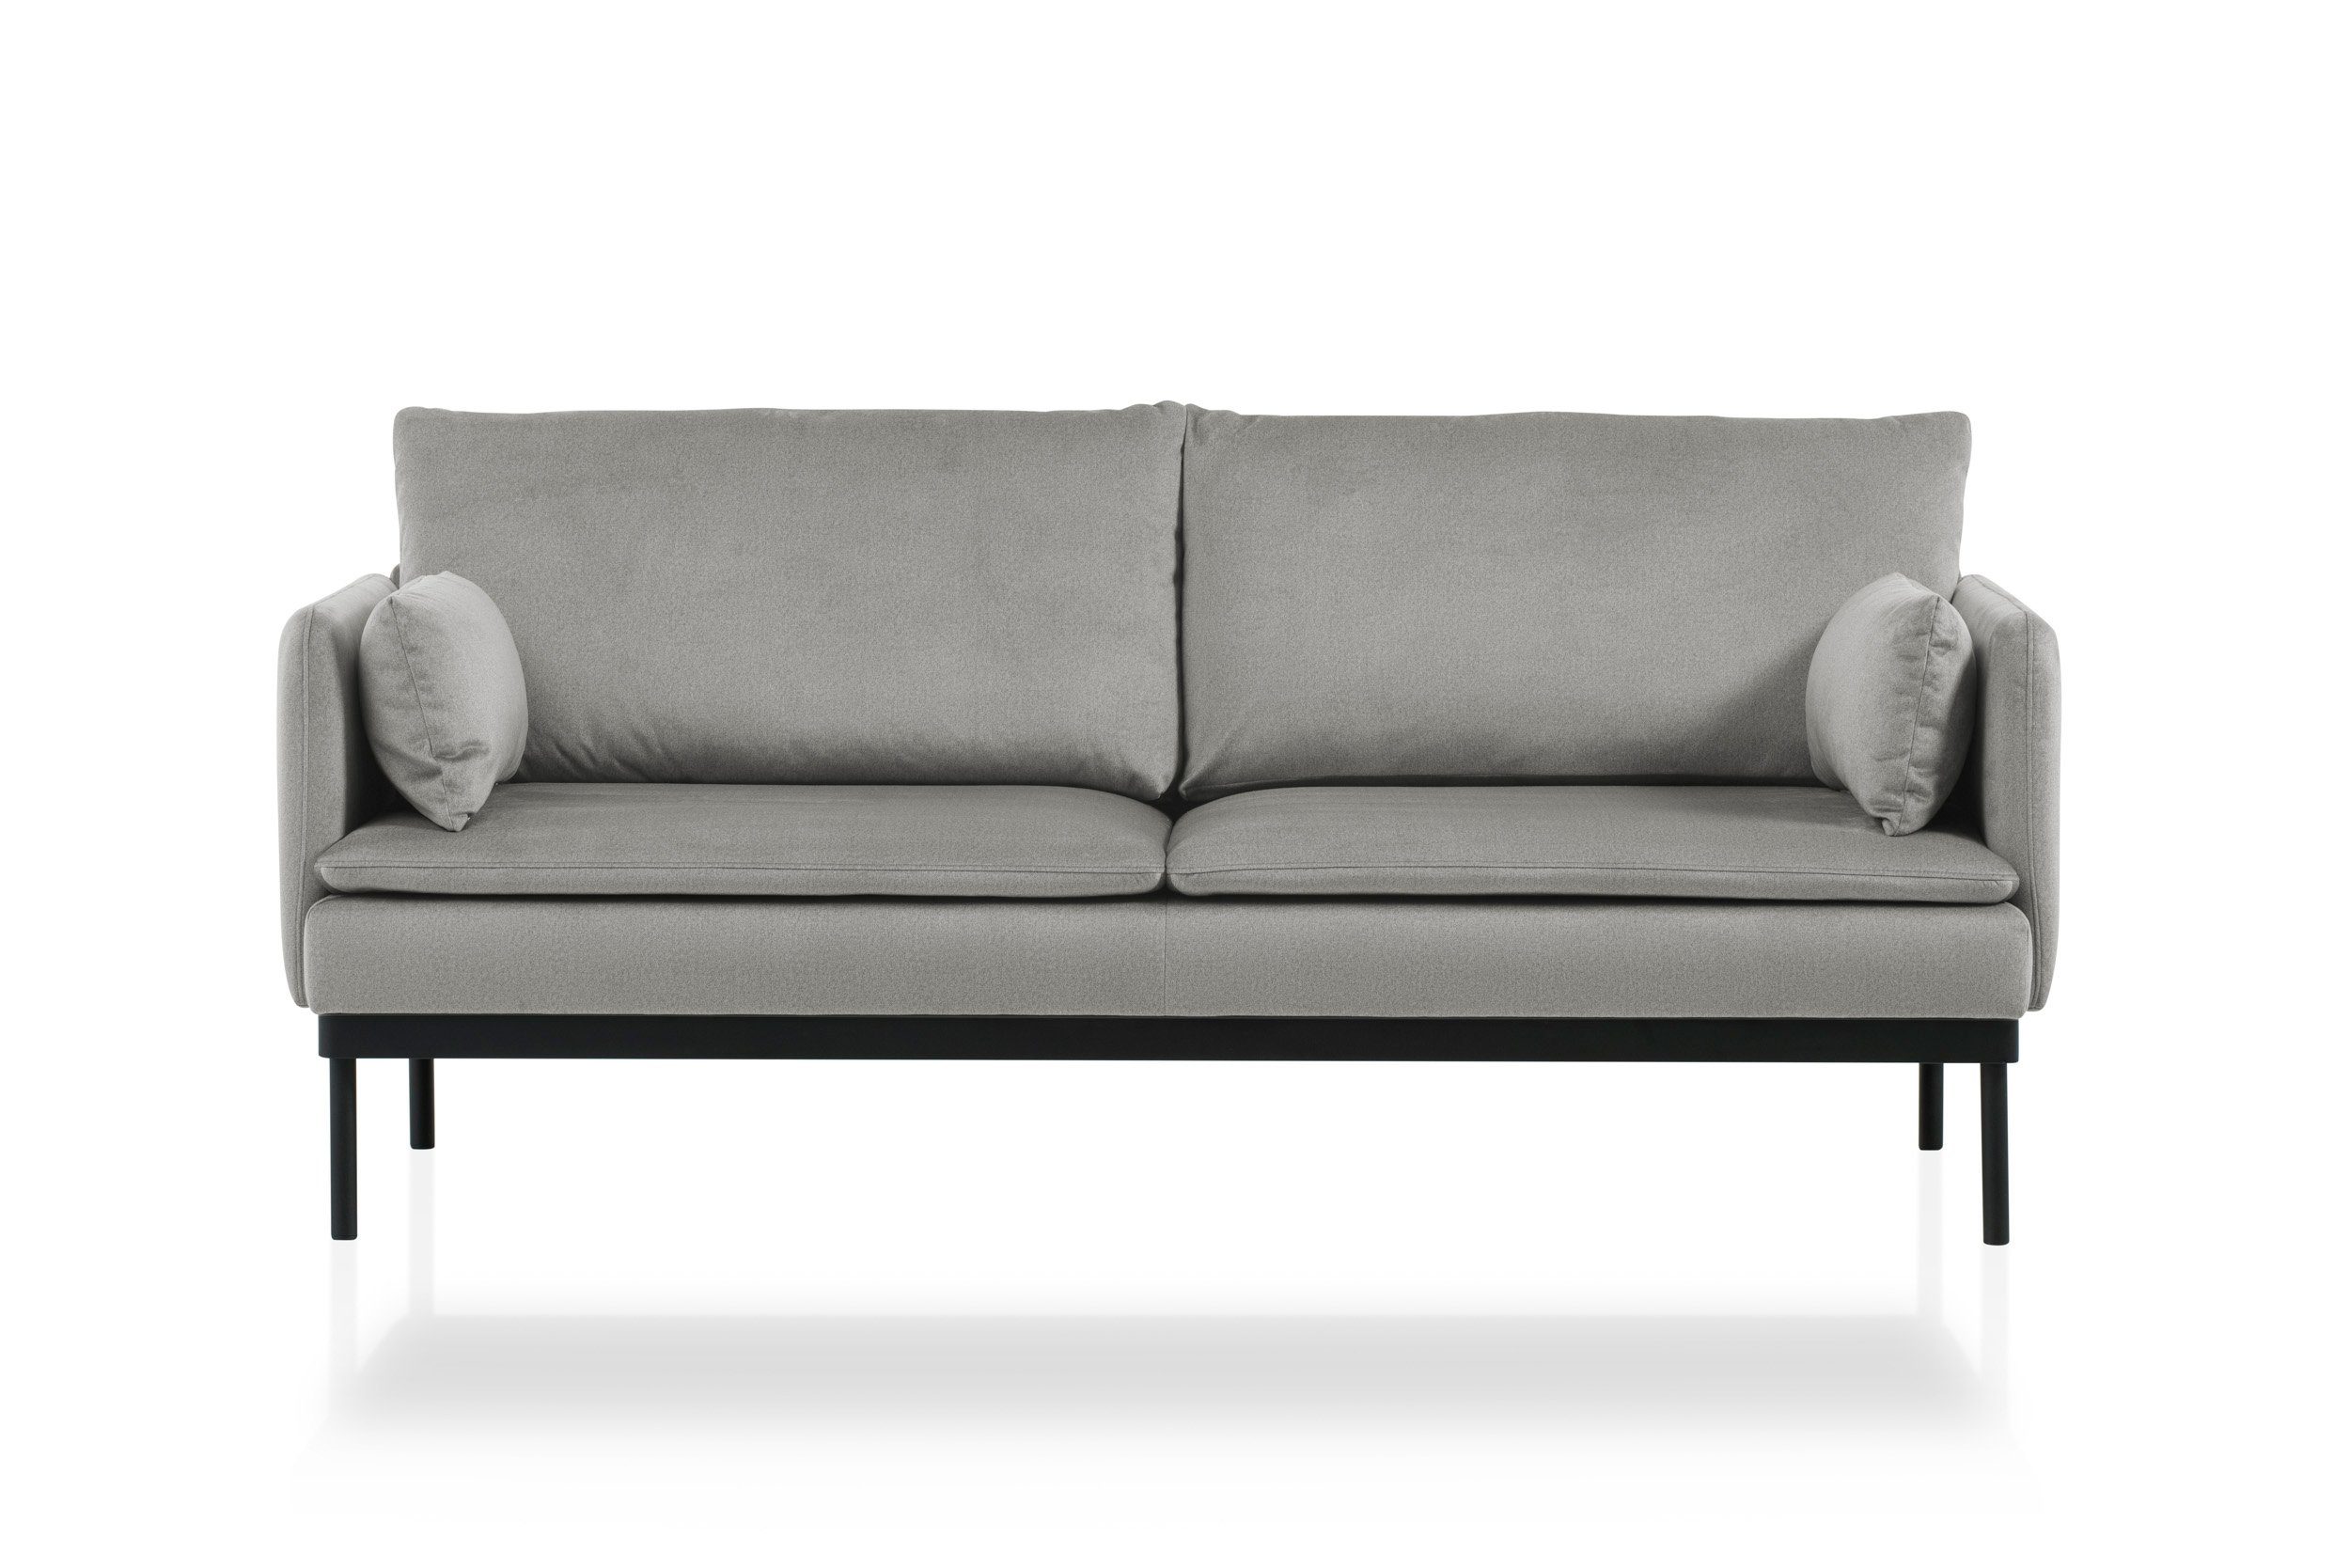 Velours-Stoff, weicher Europe hochwertige skandinavischen Design, besonders Grau im 2-Sitzer Einzelsofa XDREAM Verarbeitung, Made modernen, Montana, in